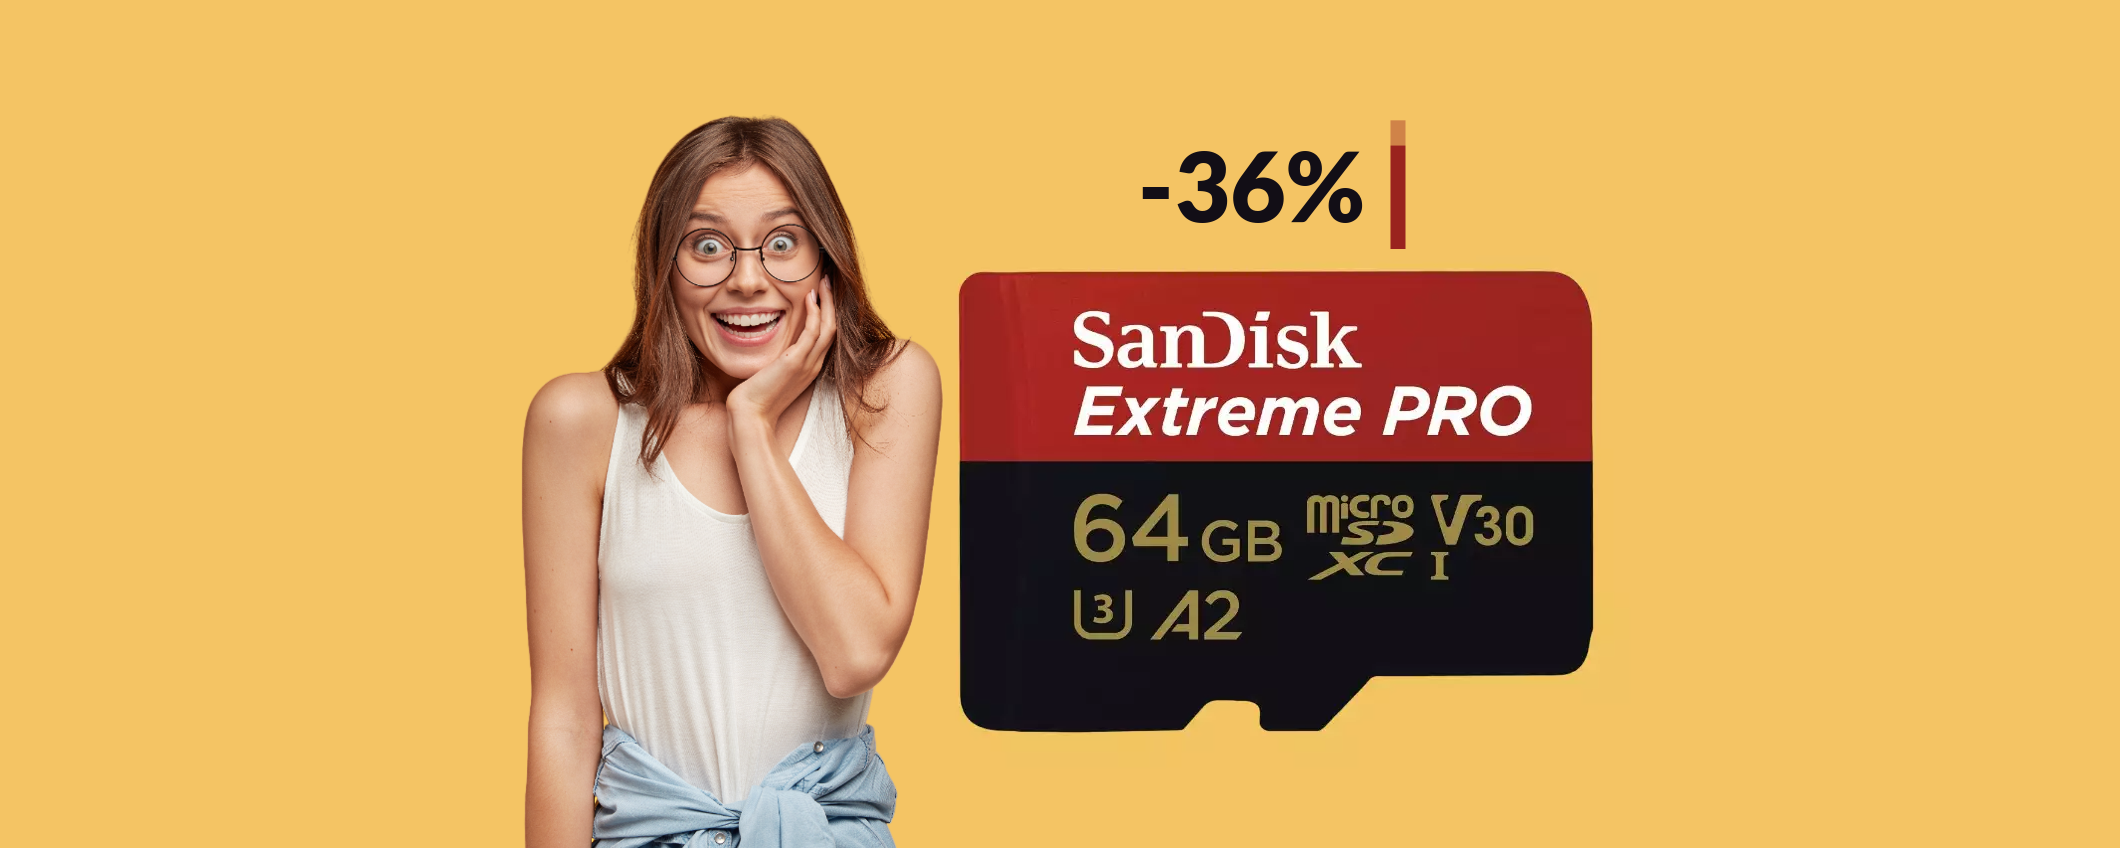 MicroSD SanDisk 64GB: bastano solo 21€ per questa BOMBA